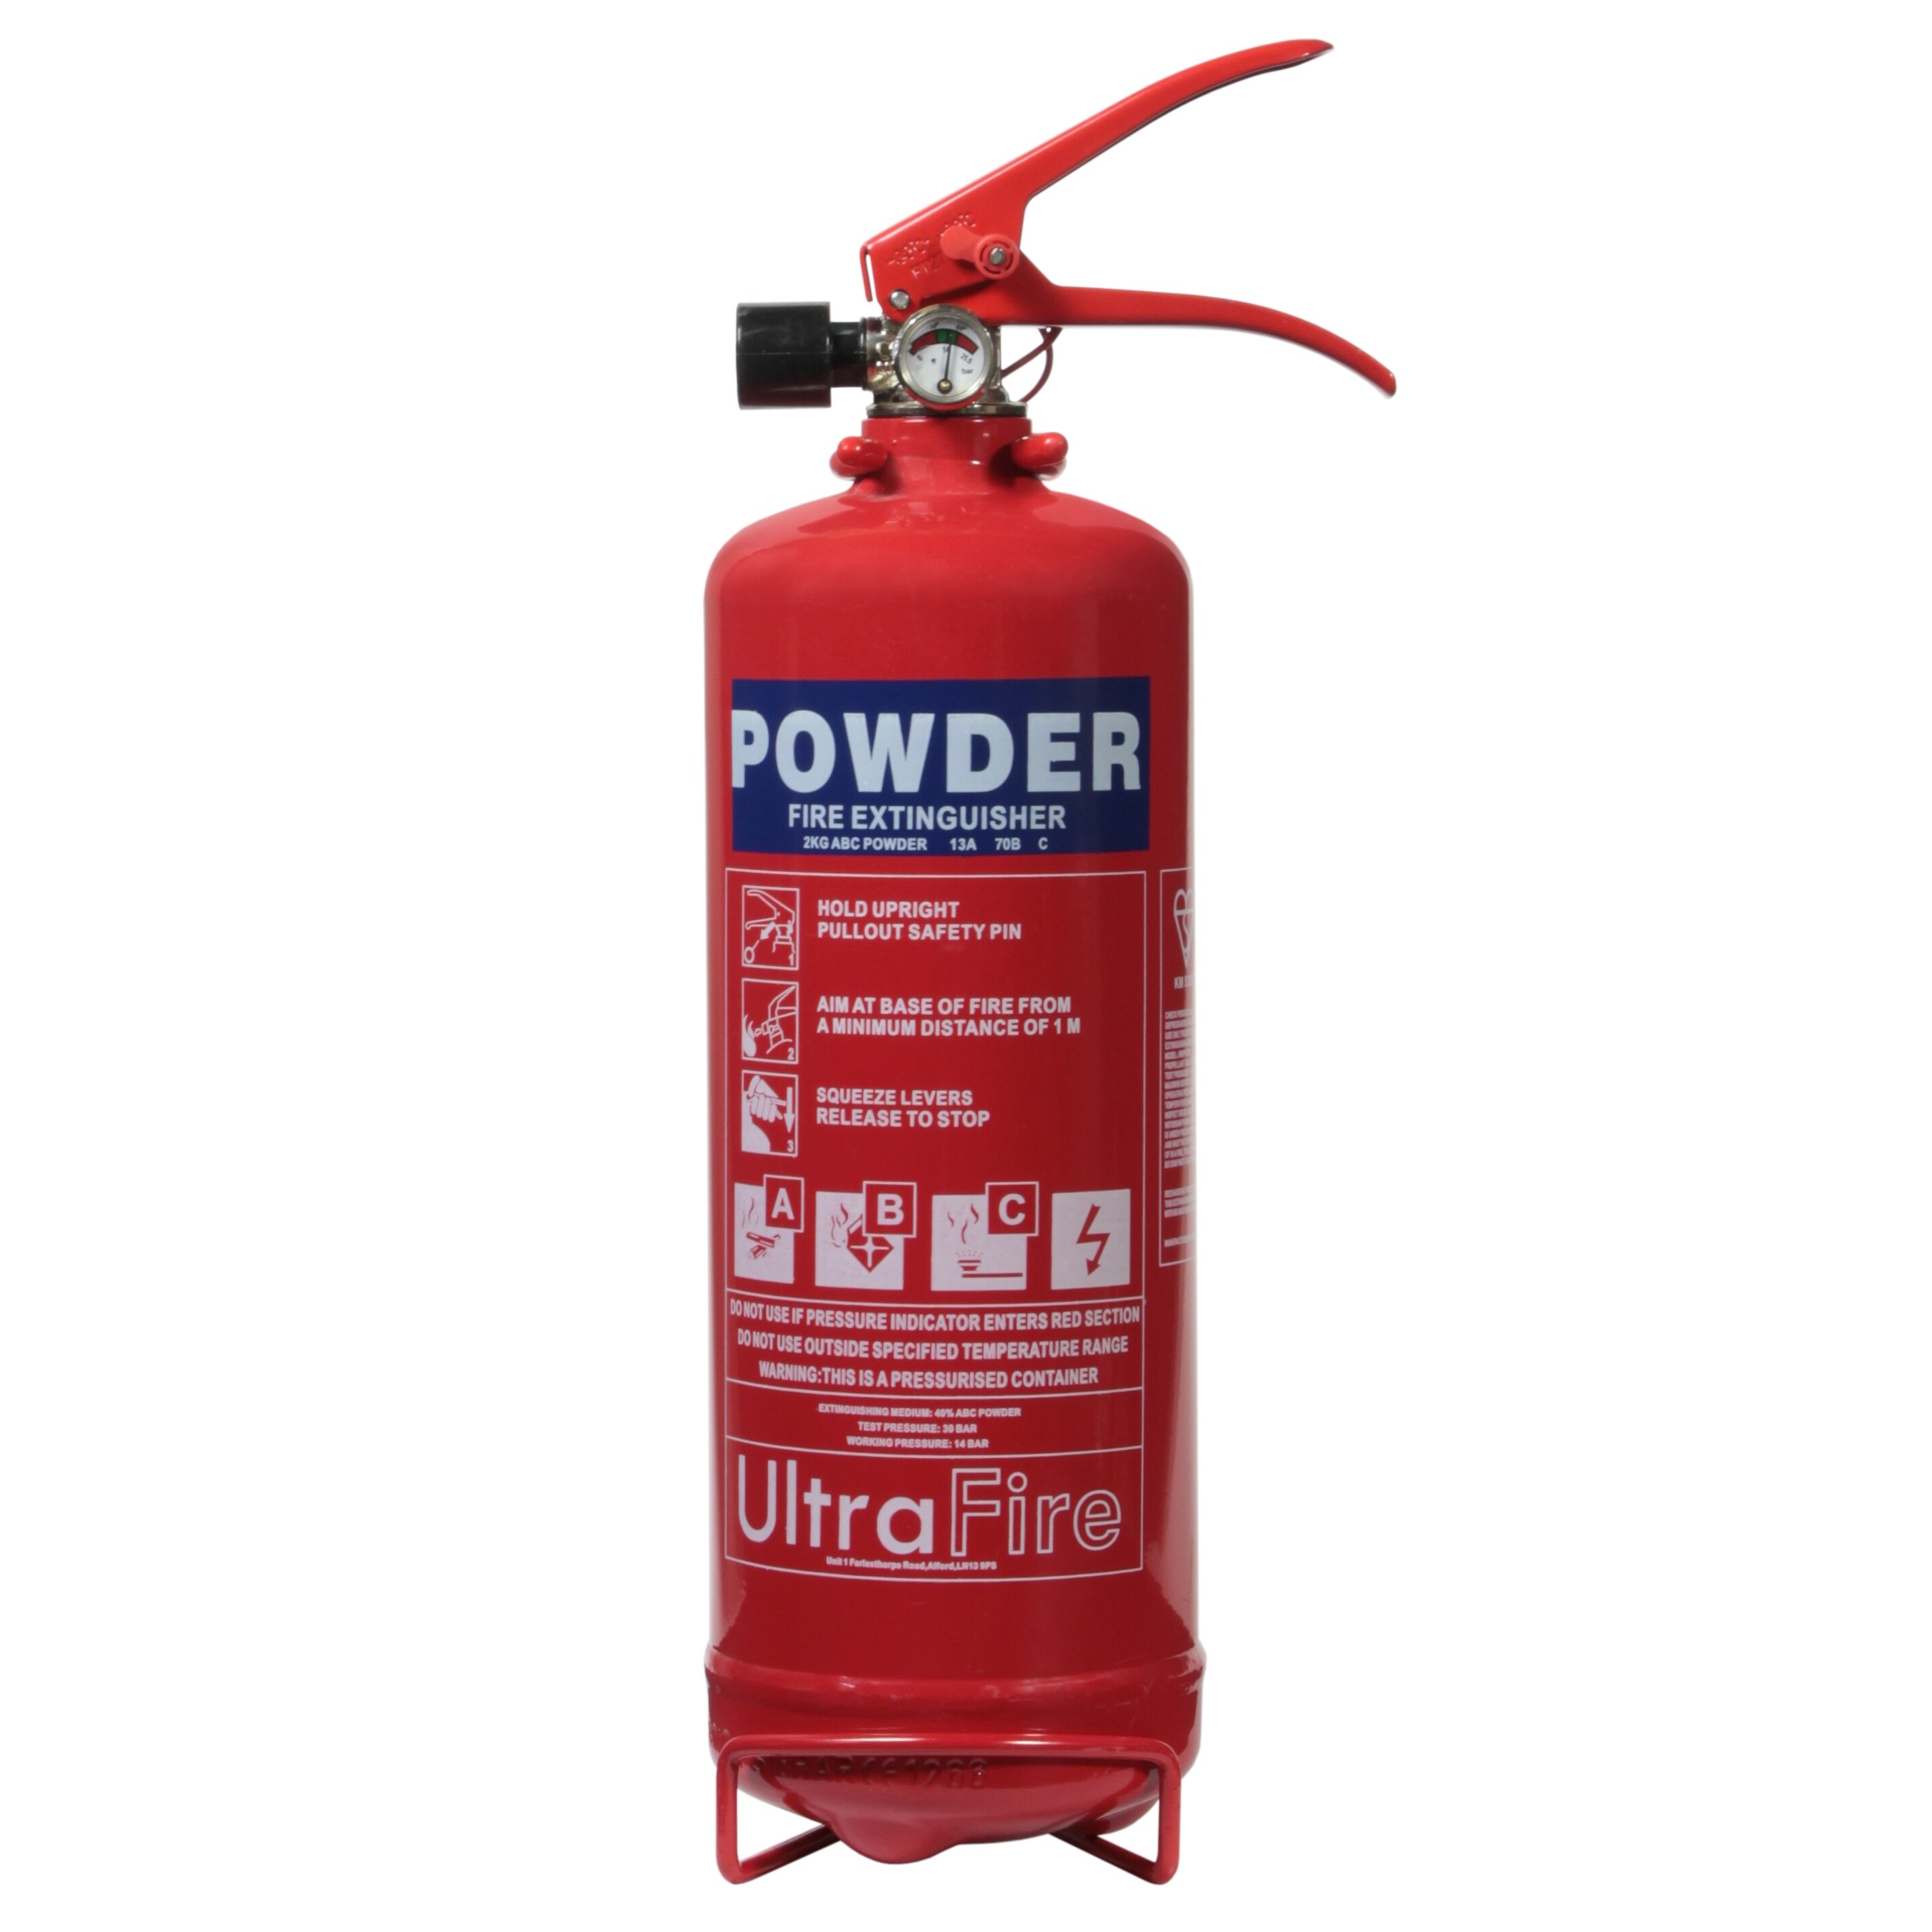 2kg fire extinguisher powder